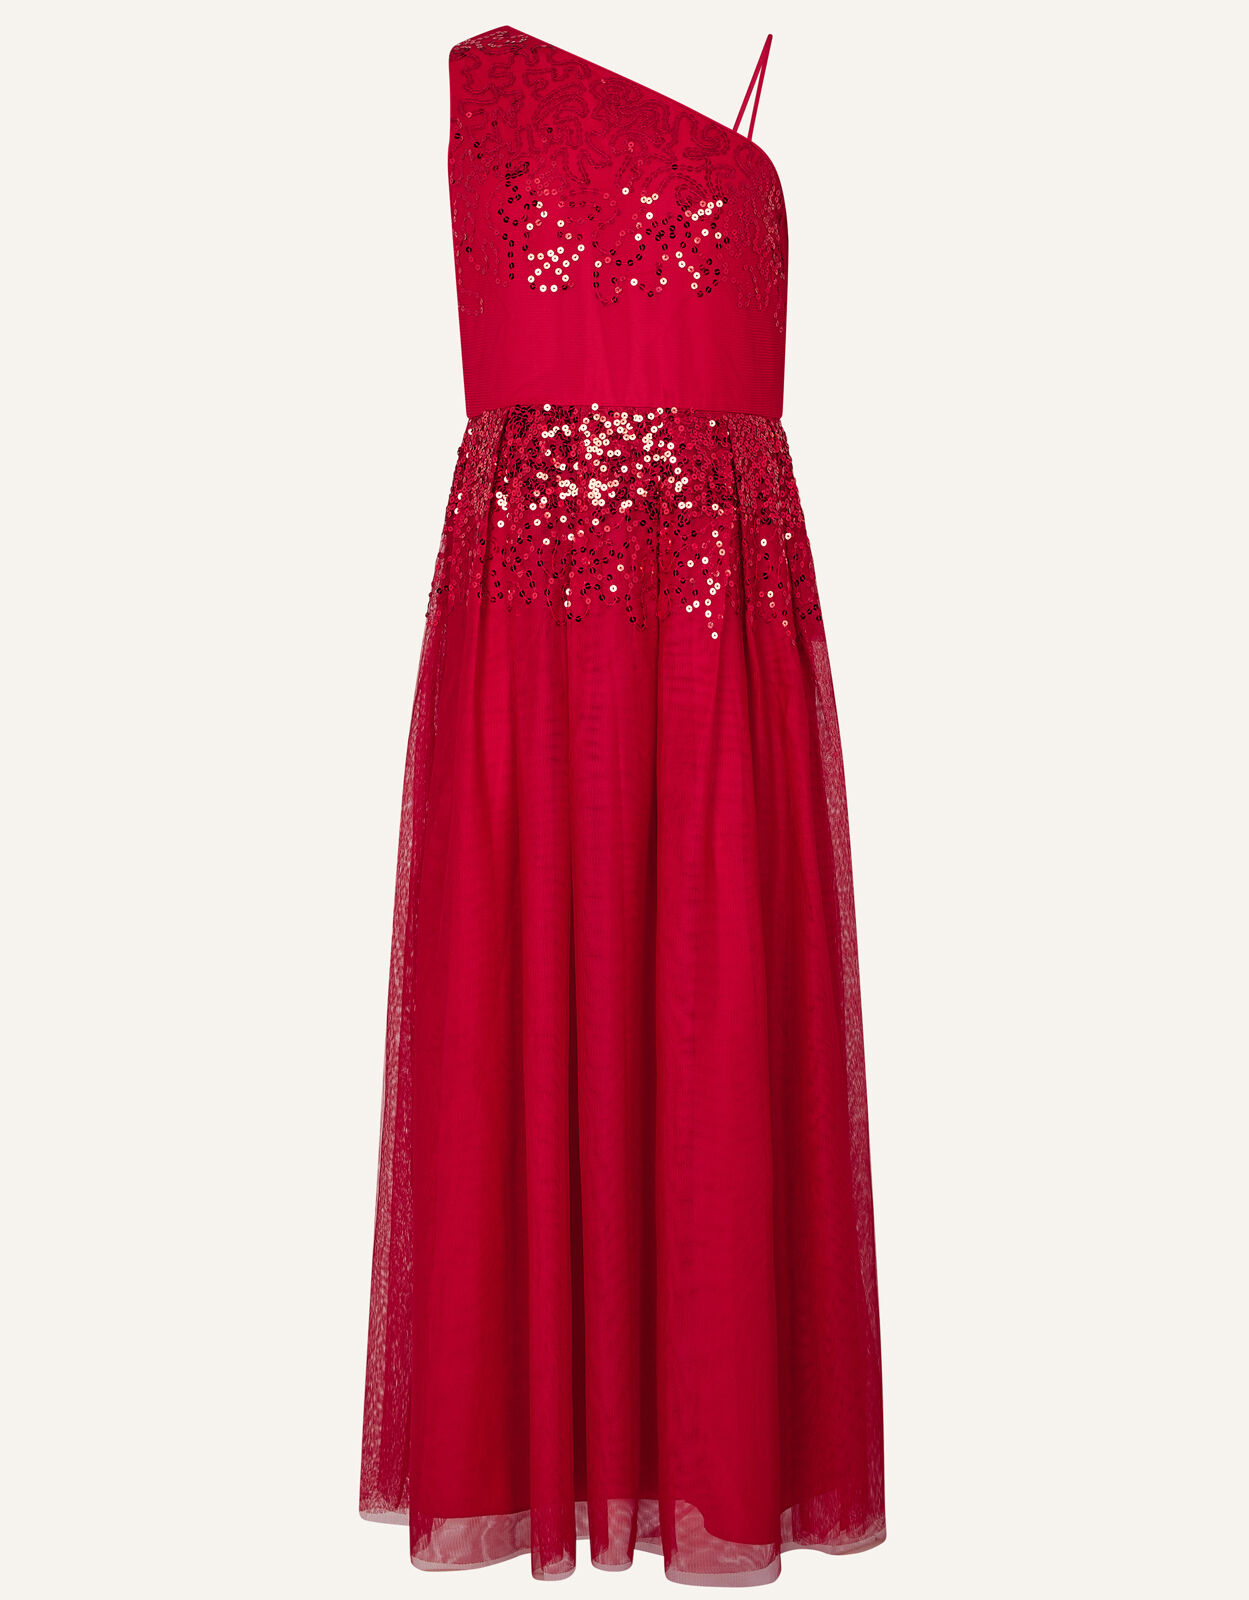 Elish One-Shoulder Prom Dress Red ...